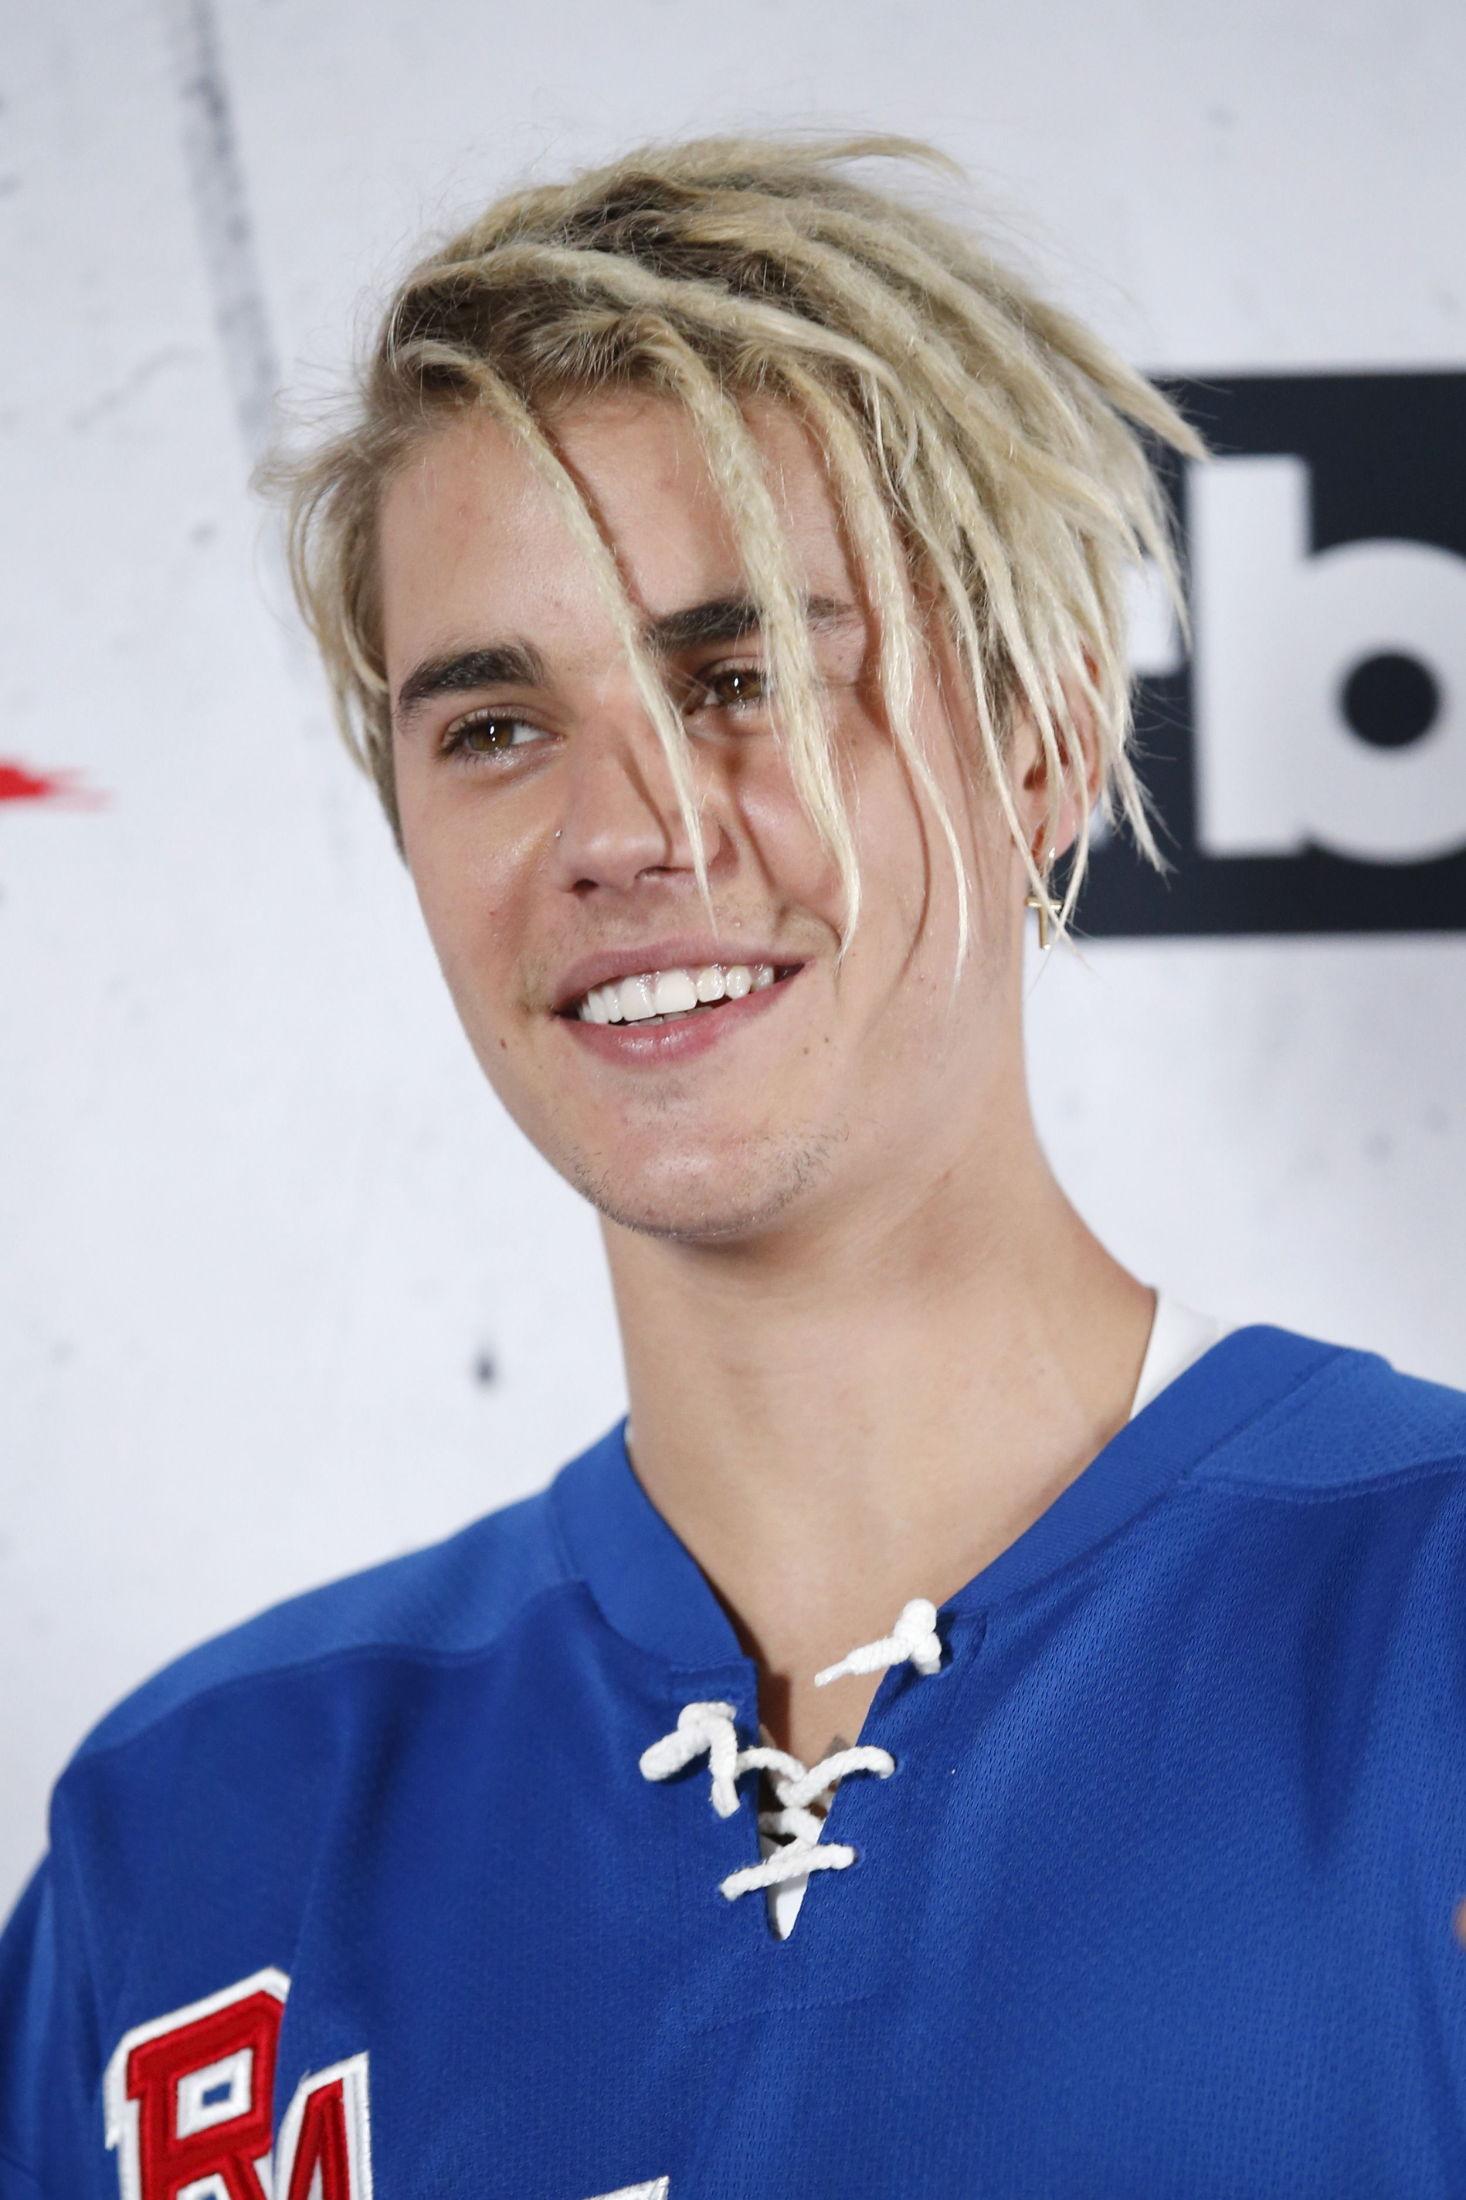 DREADS: I 2016 fikk Bieber dreads i det blonde håret sitt. 